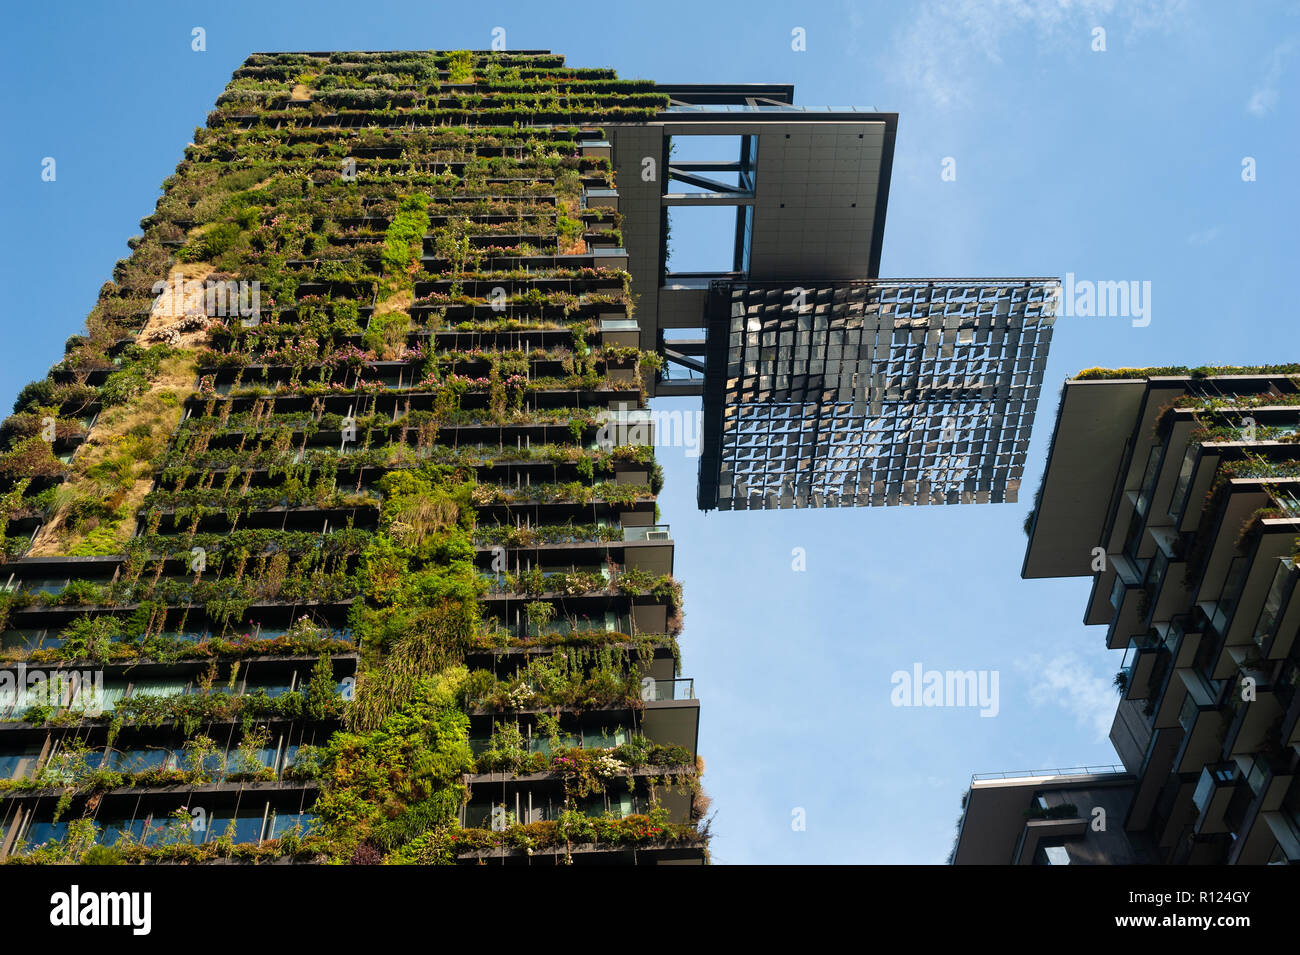 08.05.2018, Sydney, Nuovo Galles del Sud, Australia - una vista di un Central Park edificio, un sostenibile utilizzo misto e multi-complesso residenziale. Foto Stock